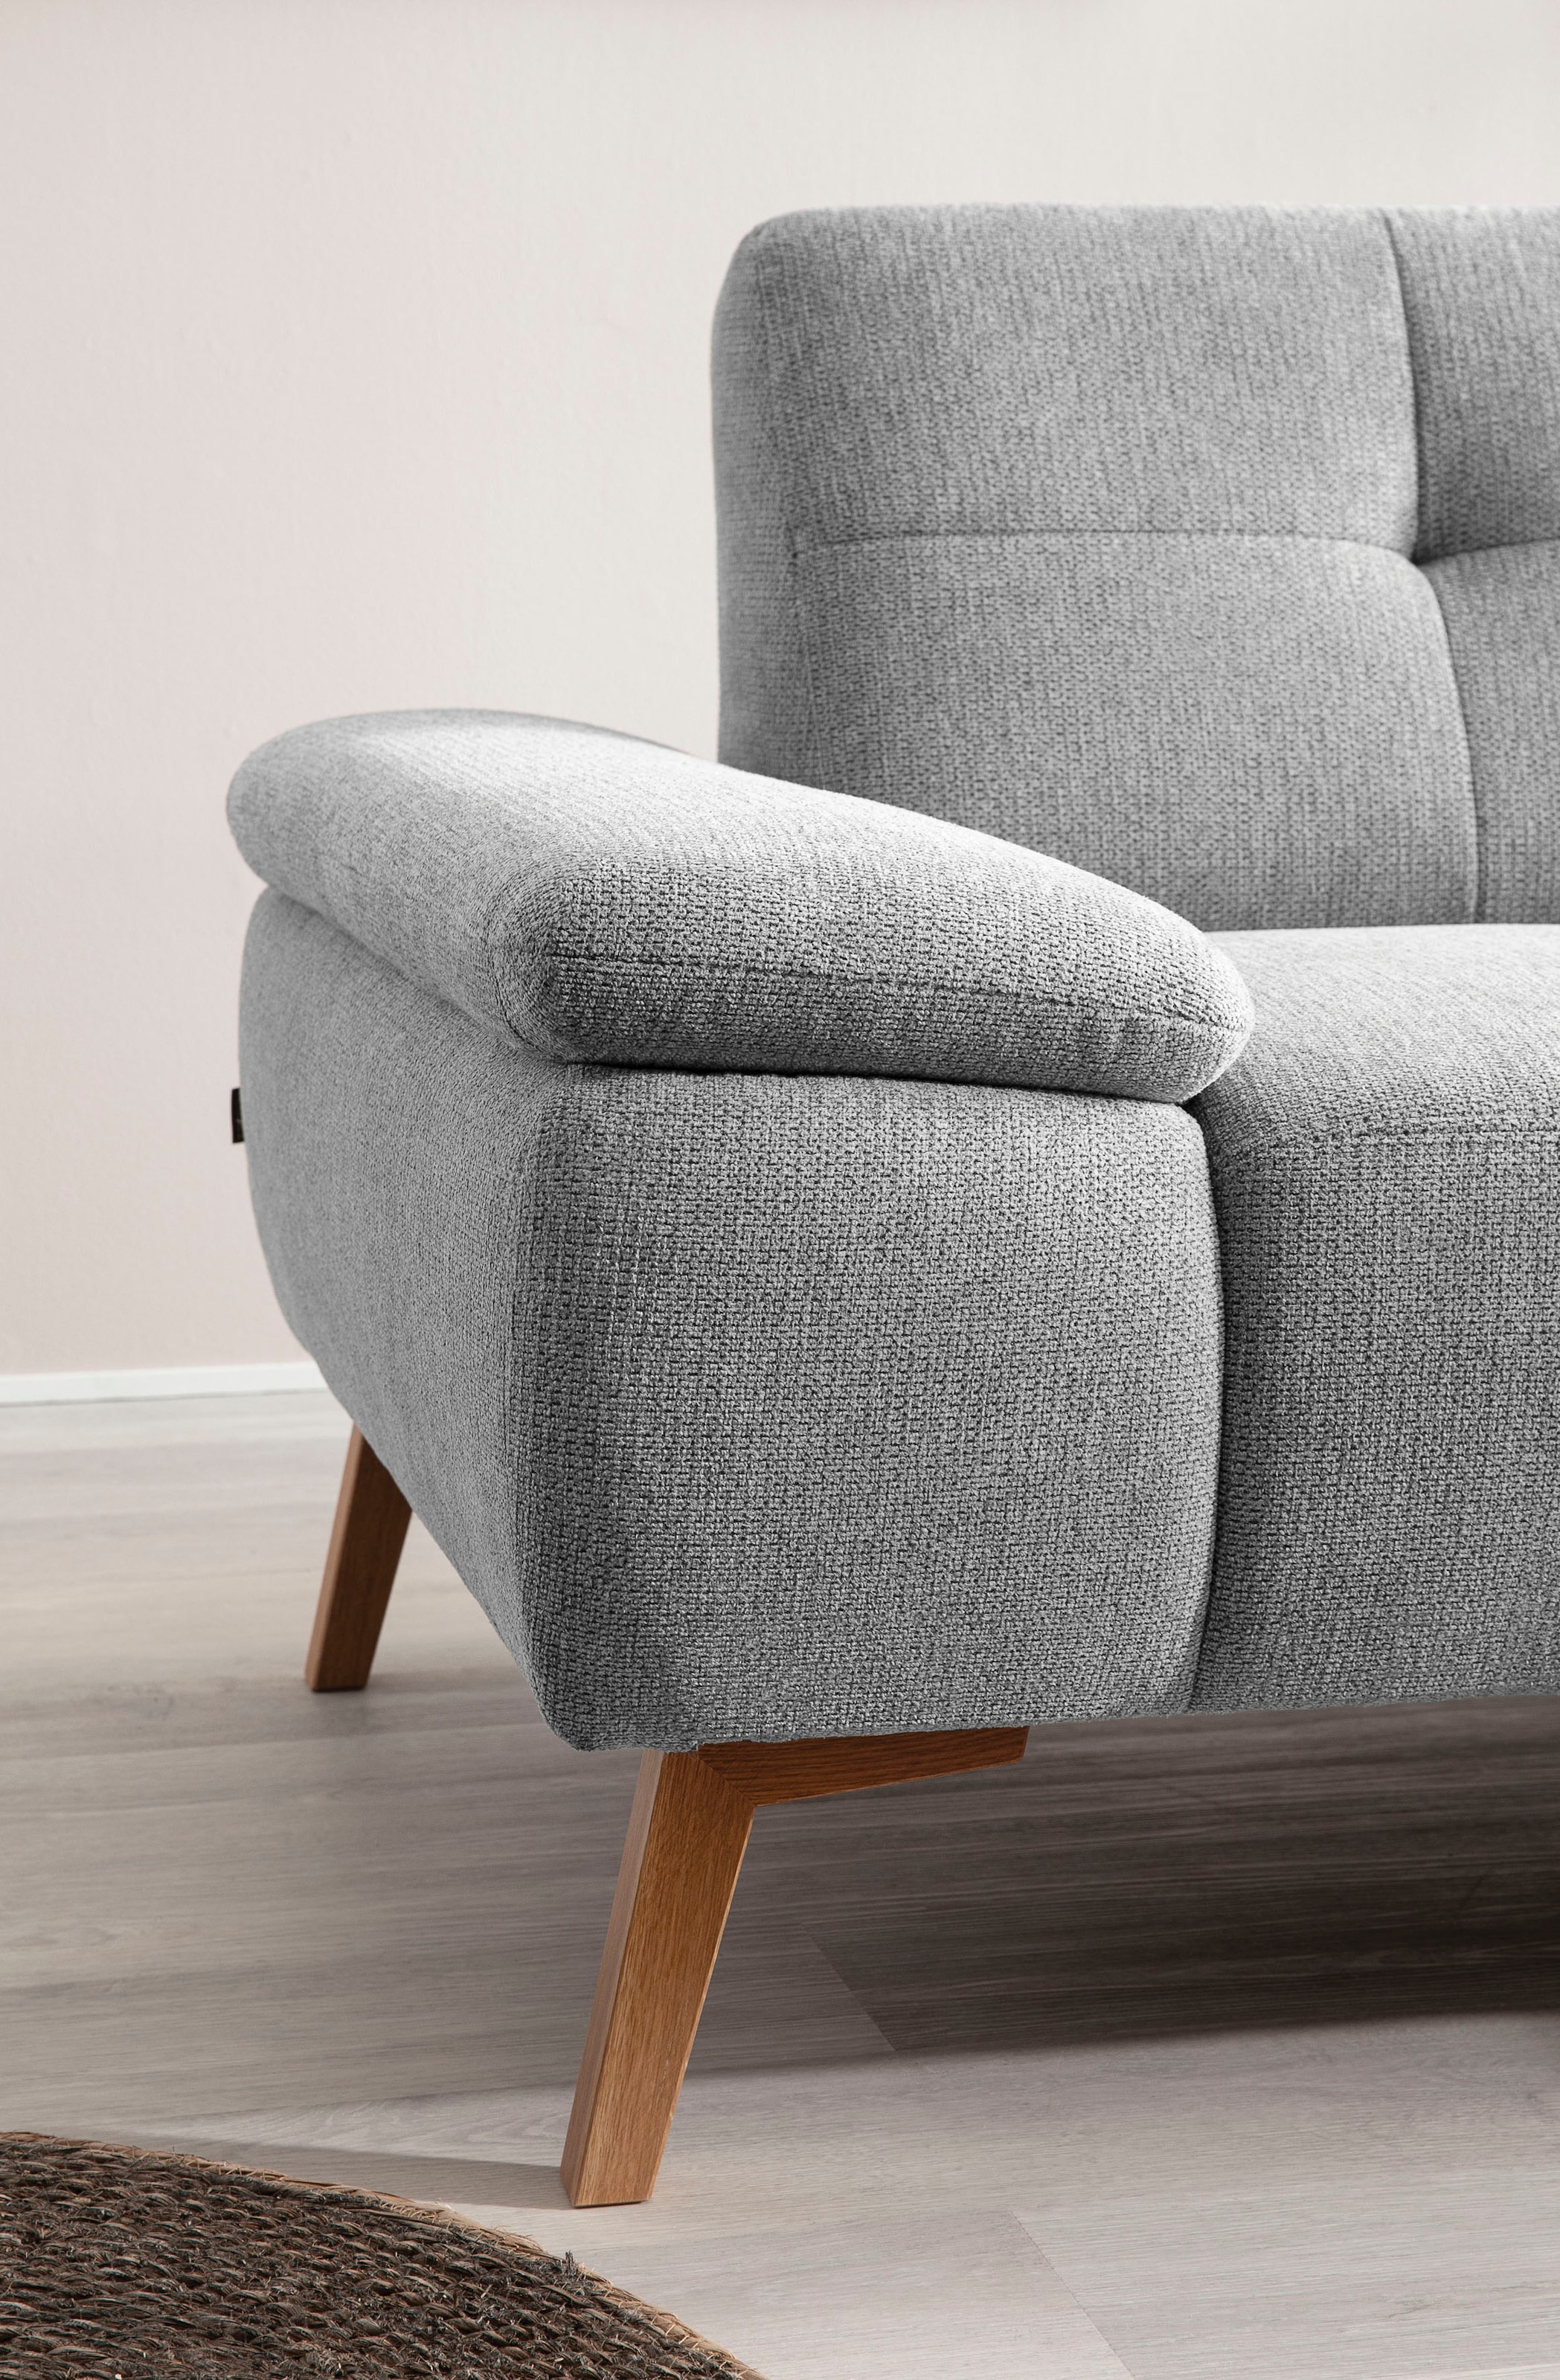 exxpo - sofa fashion Ecksofa »Sassari, L-Form«, im skandinavischen Design mit Steppung und Holzfüßen